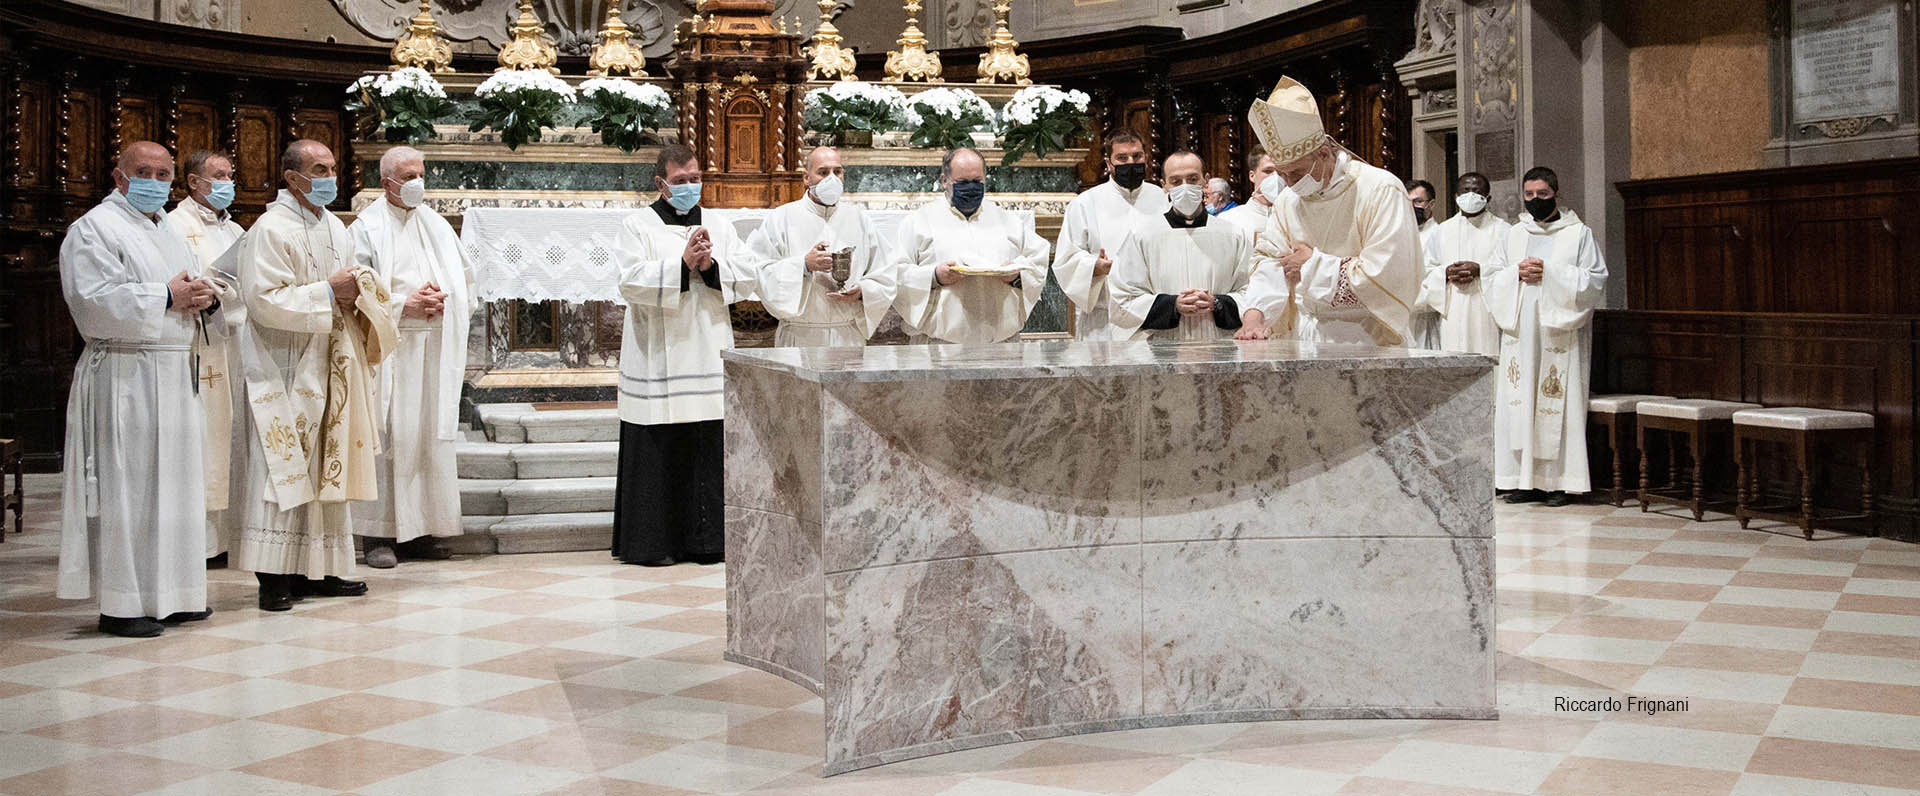 02 nuovi arredi liturgici in Basilica di San Biagio